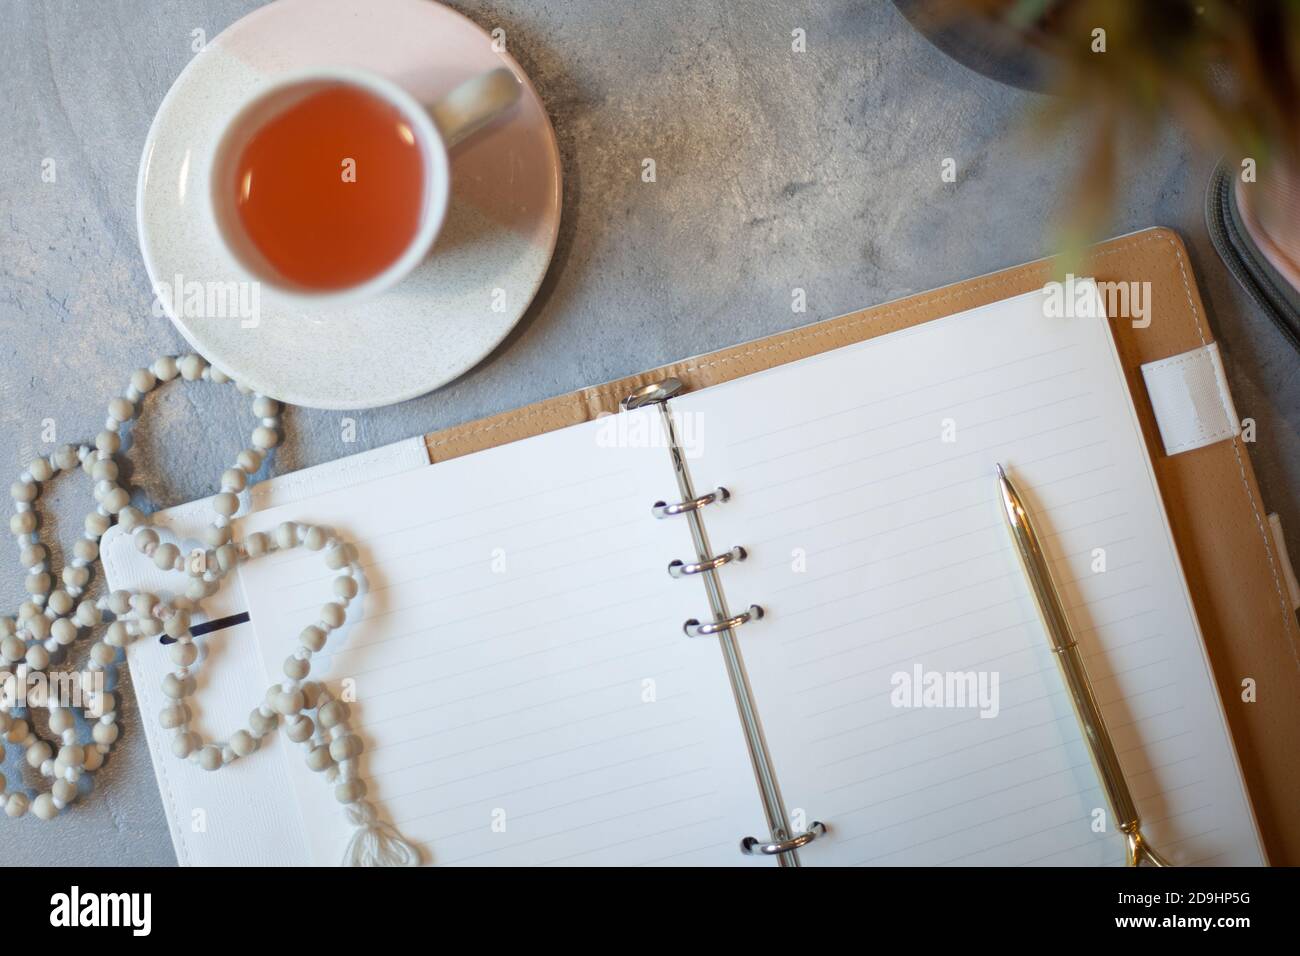 Geöffnetes Notizbuch mit sauberen Laken, goldenem Stift, Rosenkranz, pinkfarbenem Etui und einer Tasse Tee in der Nähe einer Vase Stockfoto